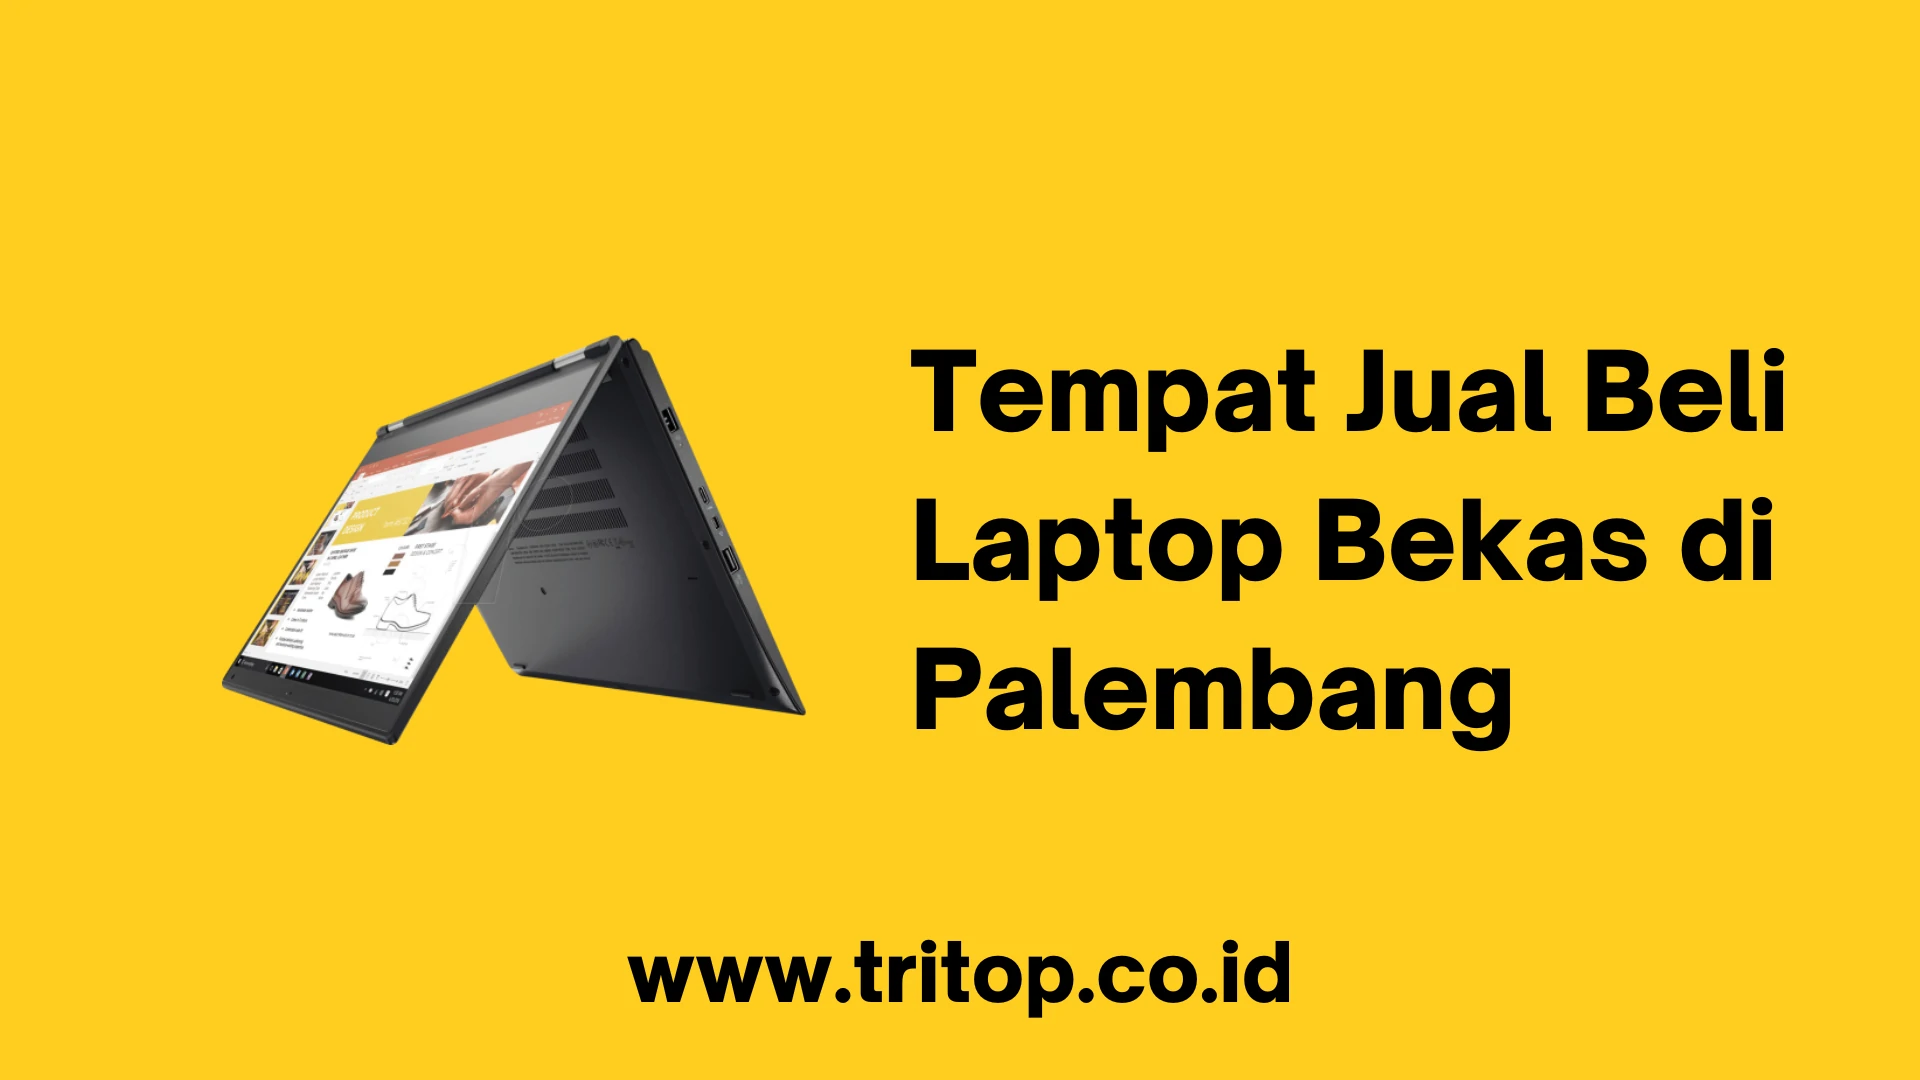 Tempat Jual Beli Laptop Bekas di Palembang